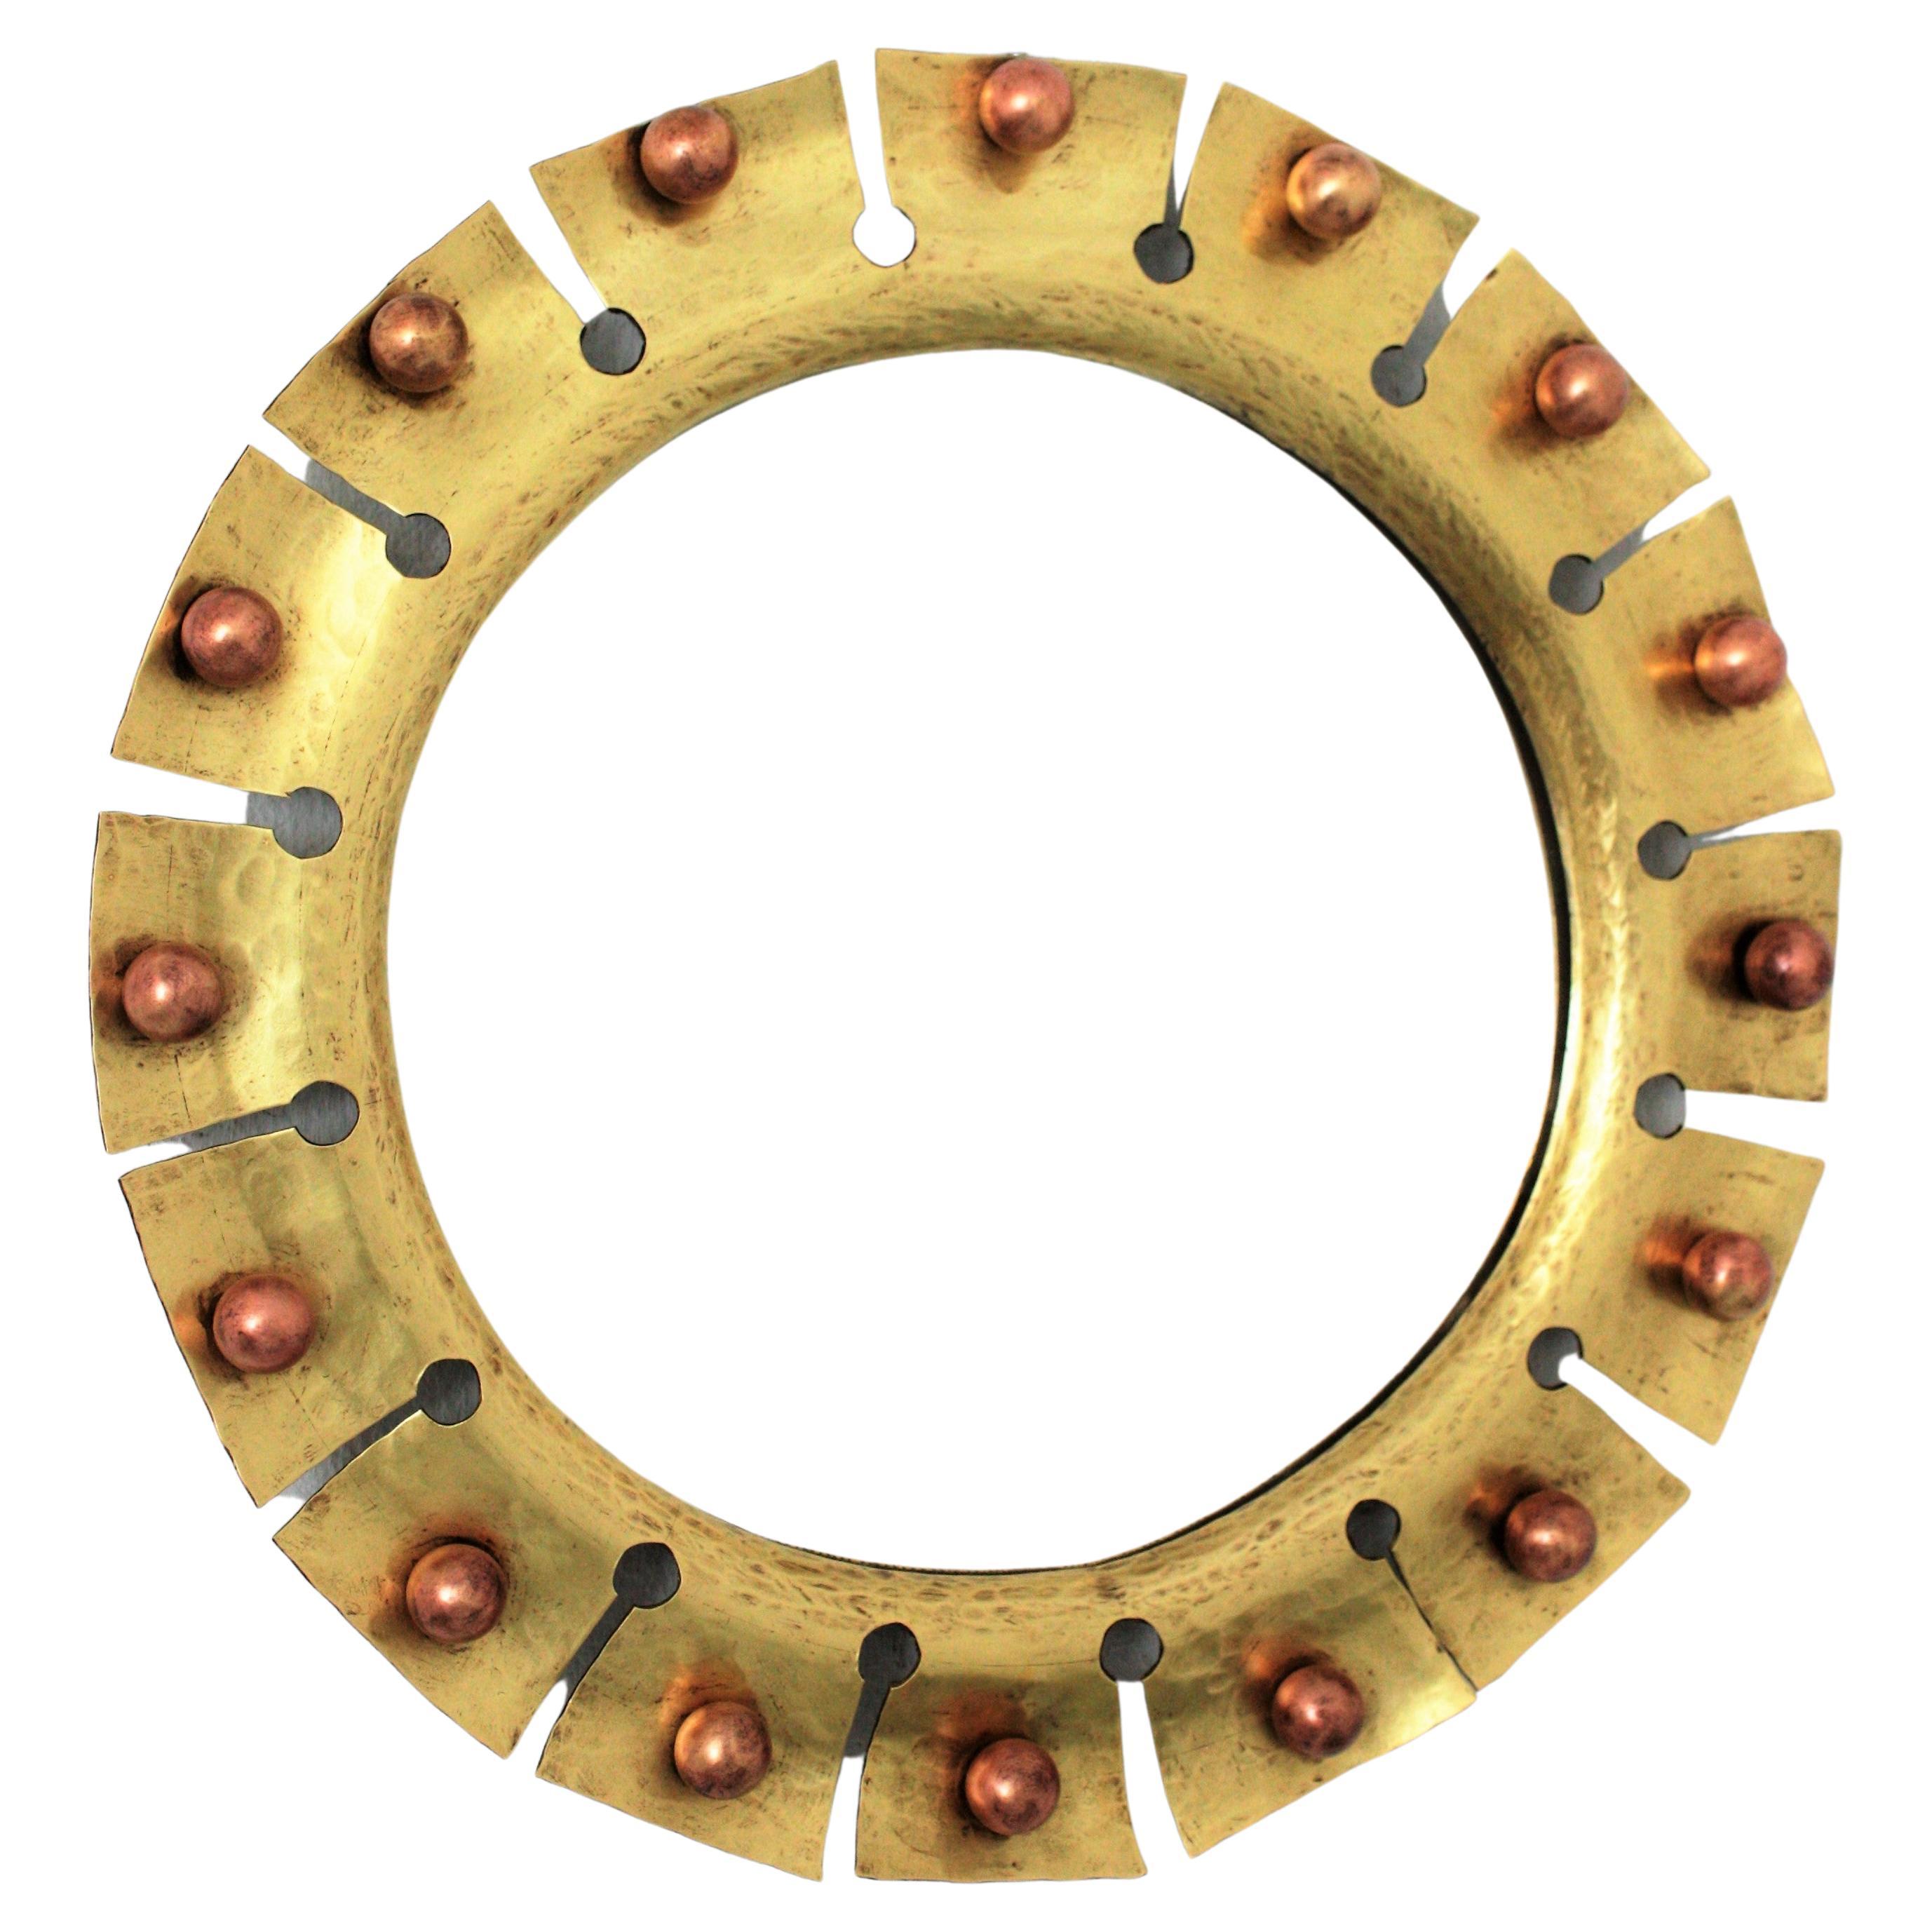 Sunburst Round Mirror in Brass with Copper Balls Accents